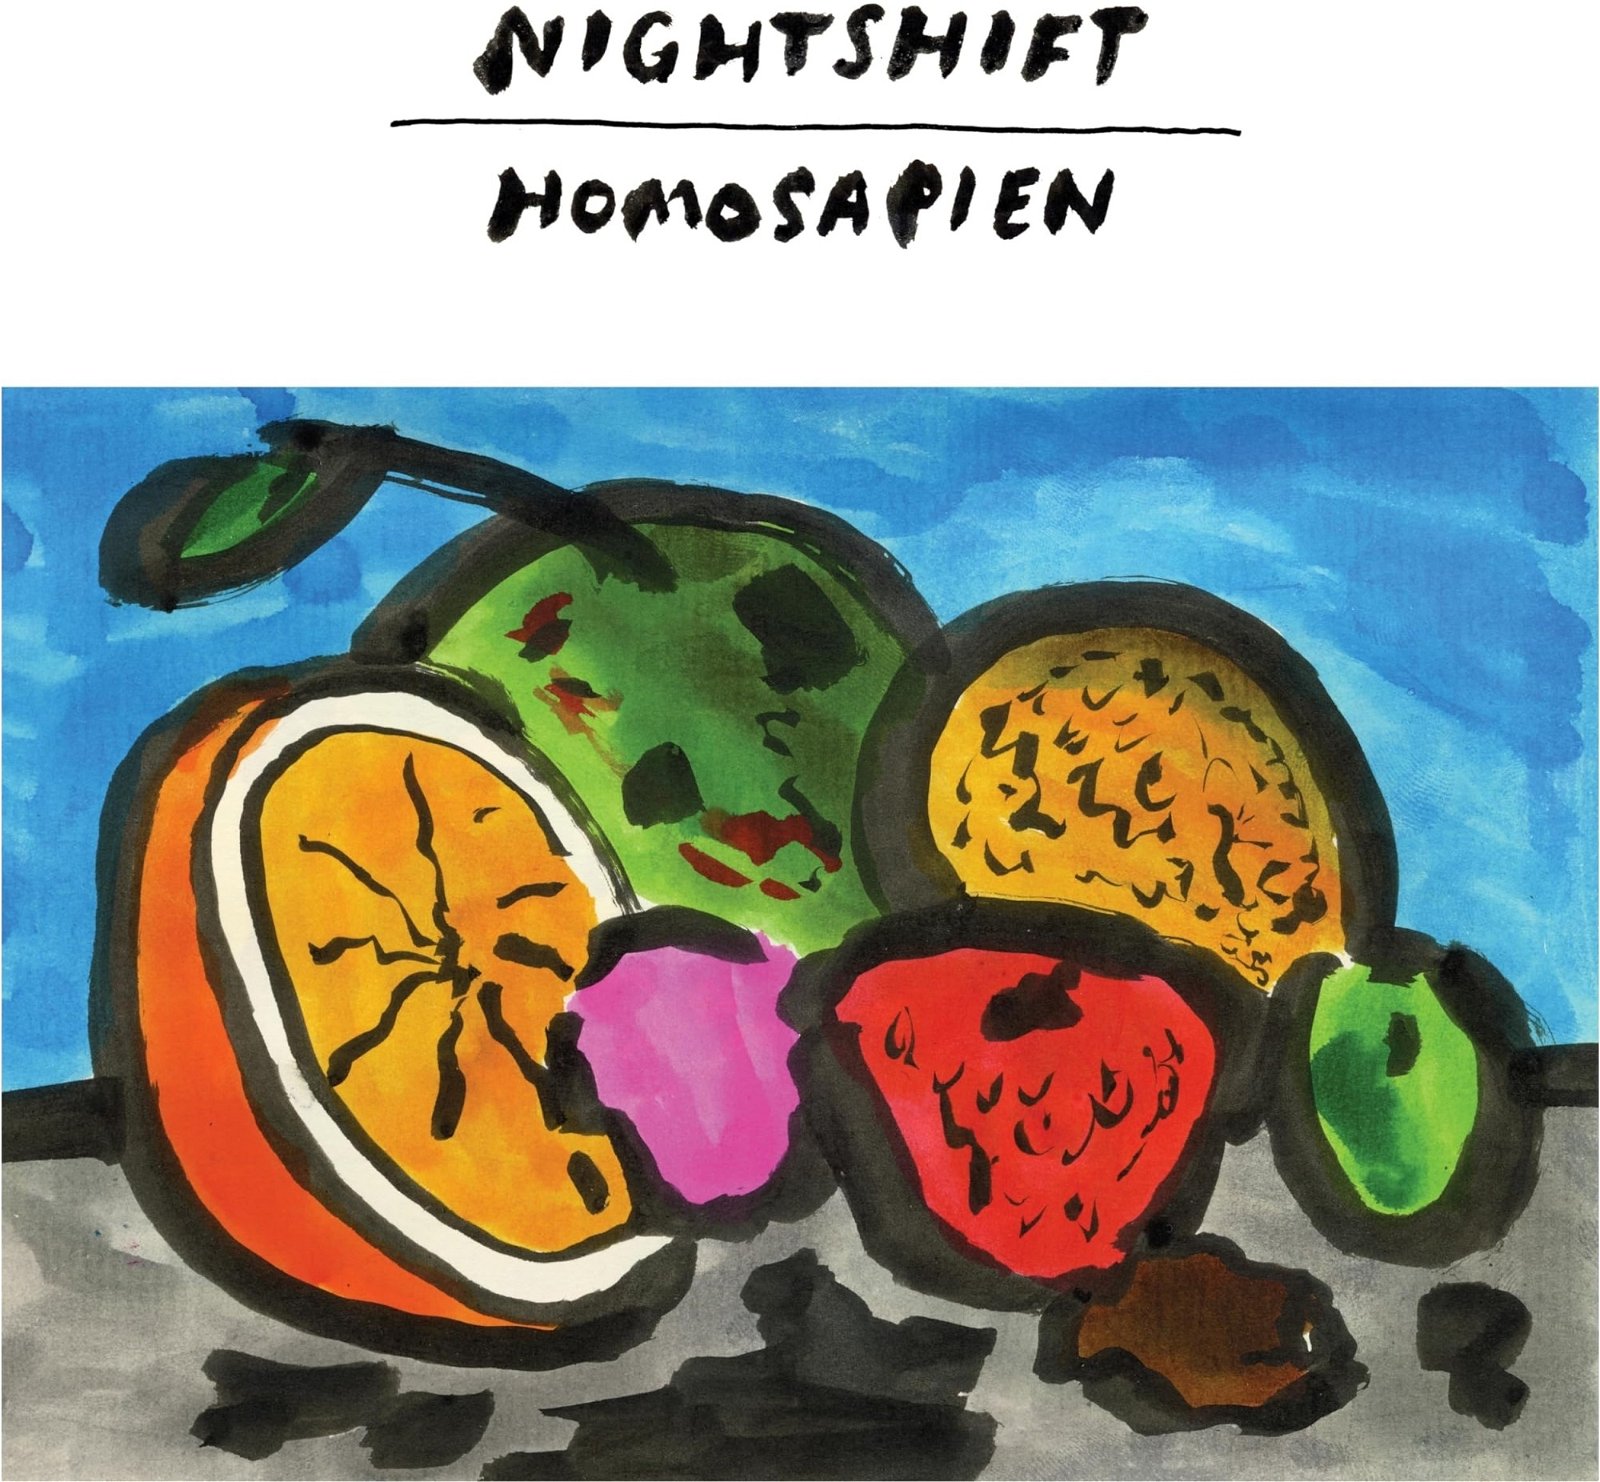 CD Shop - NIGHTSHIFT HOMOSAPIEN